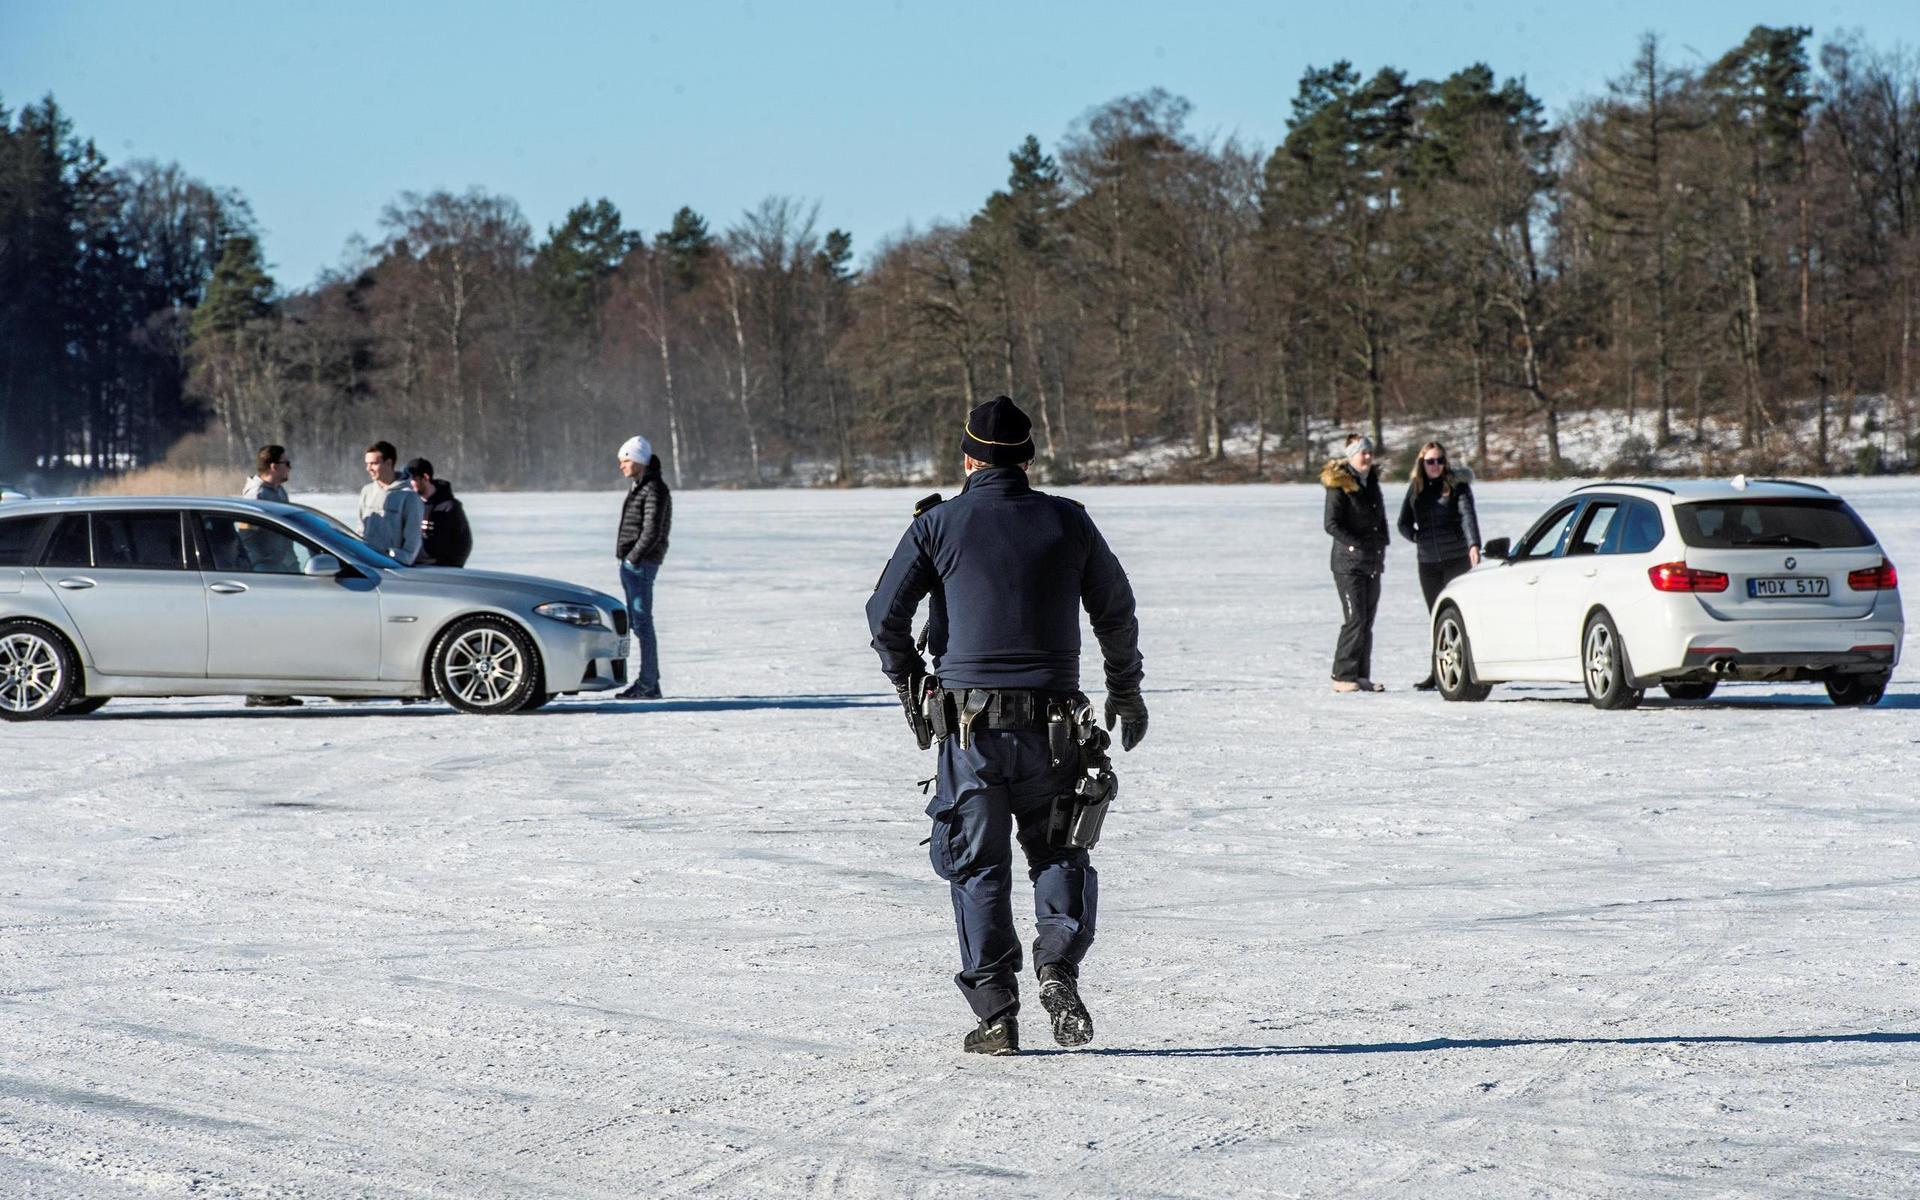 Folkfest på Sjönevadssjön när isracingentusiasterna intar sjön.